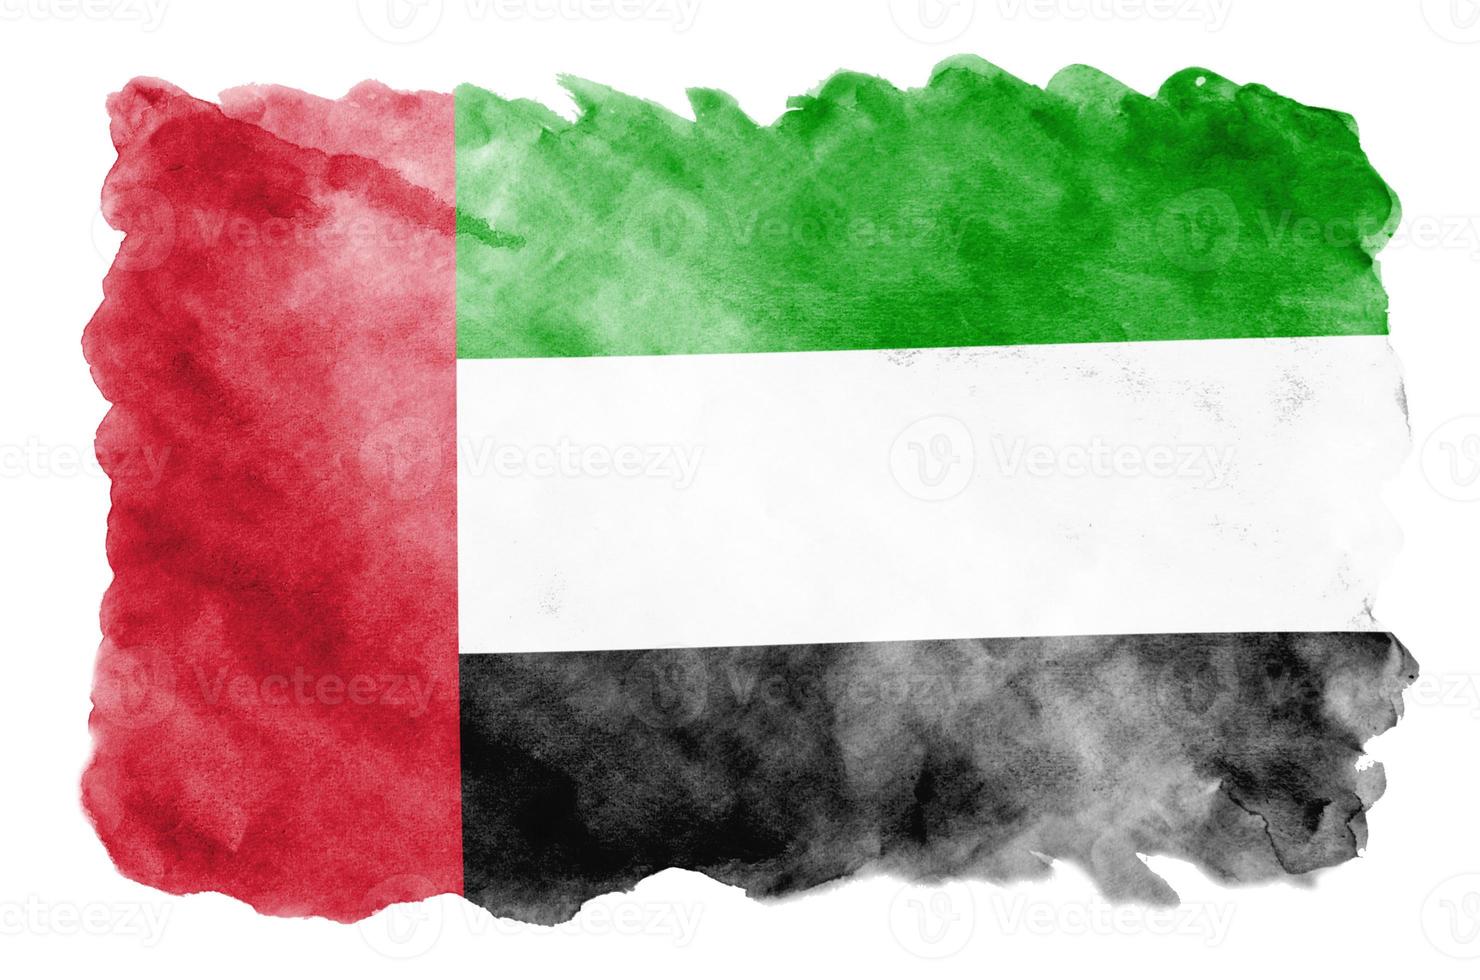 bandeira dos Emirados Árabes Unidos é retratada em estilo aquarela líquido isolado no fundo branco foto